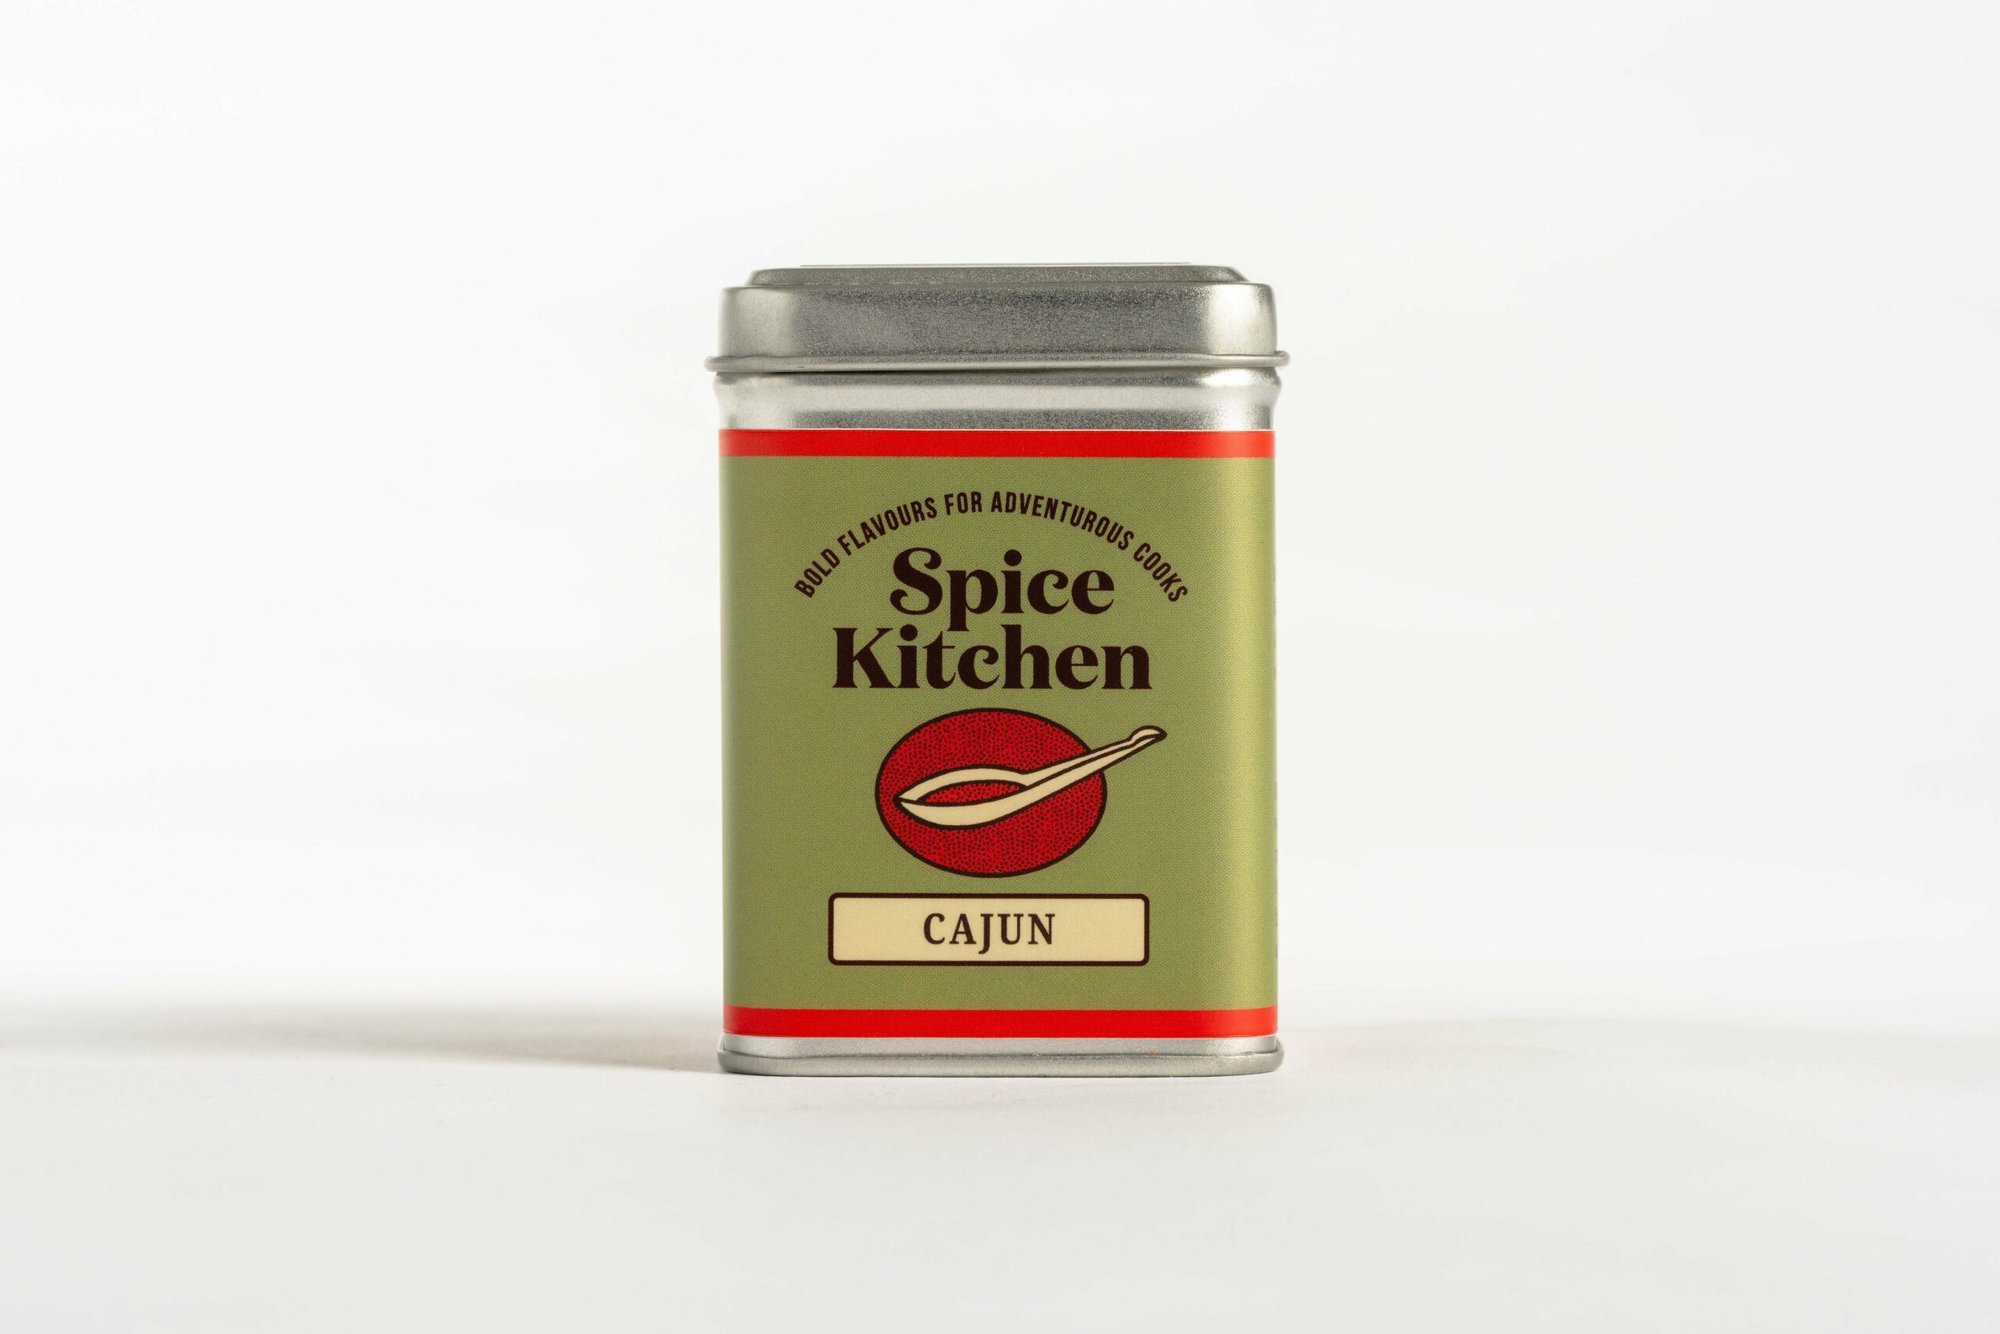 Spice Blends Tin - Cajun (80g)